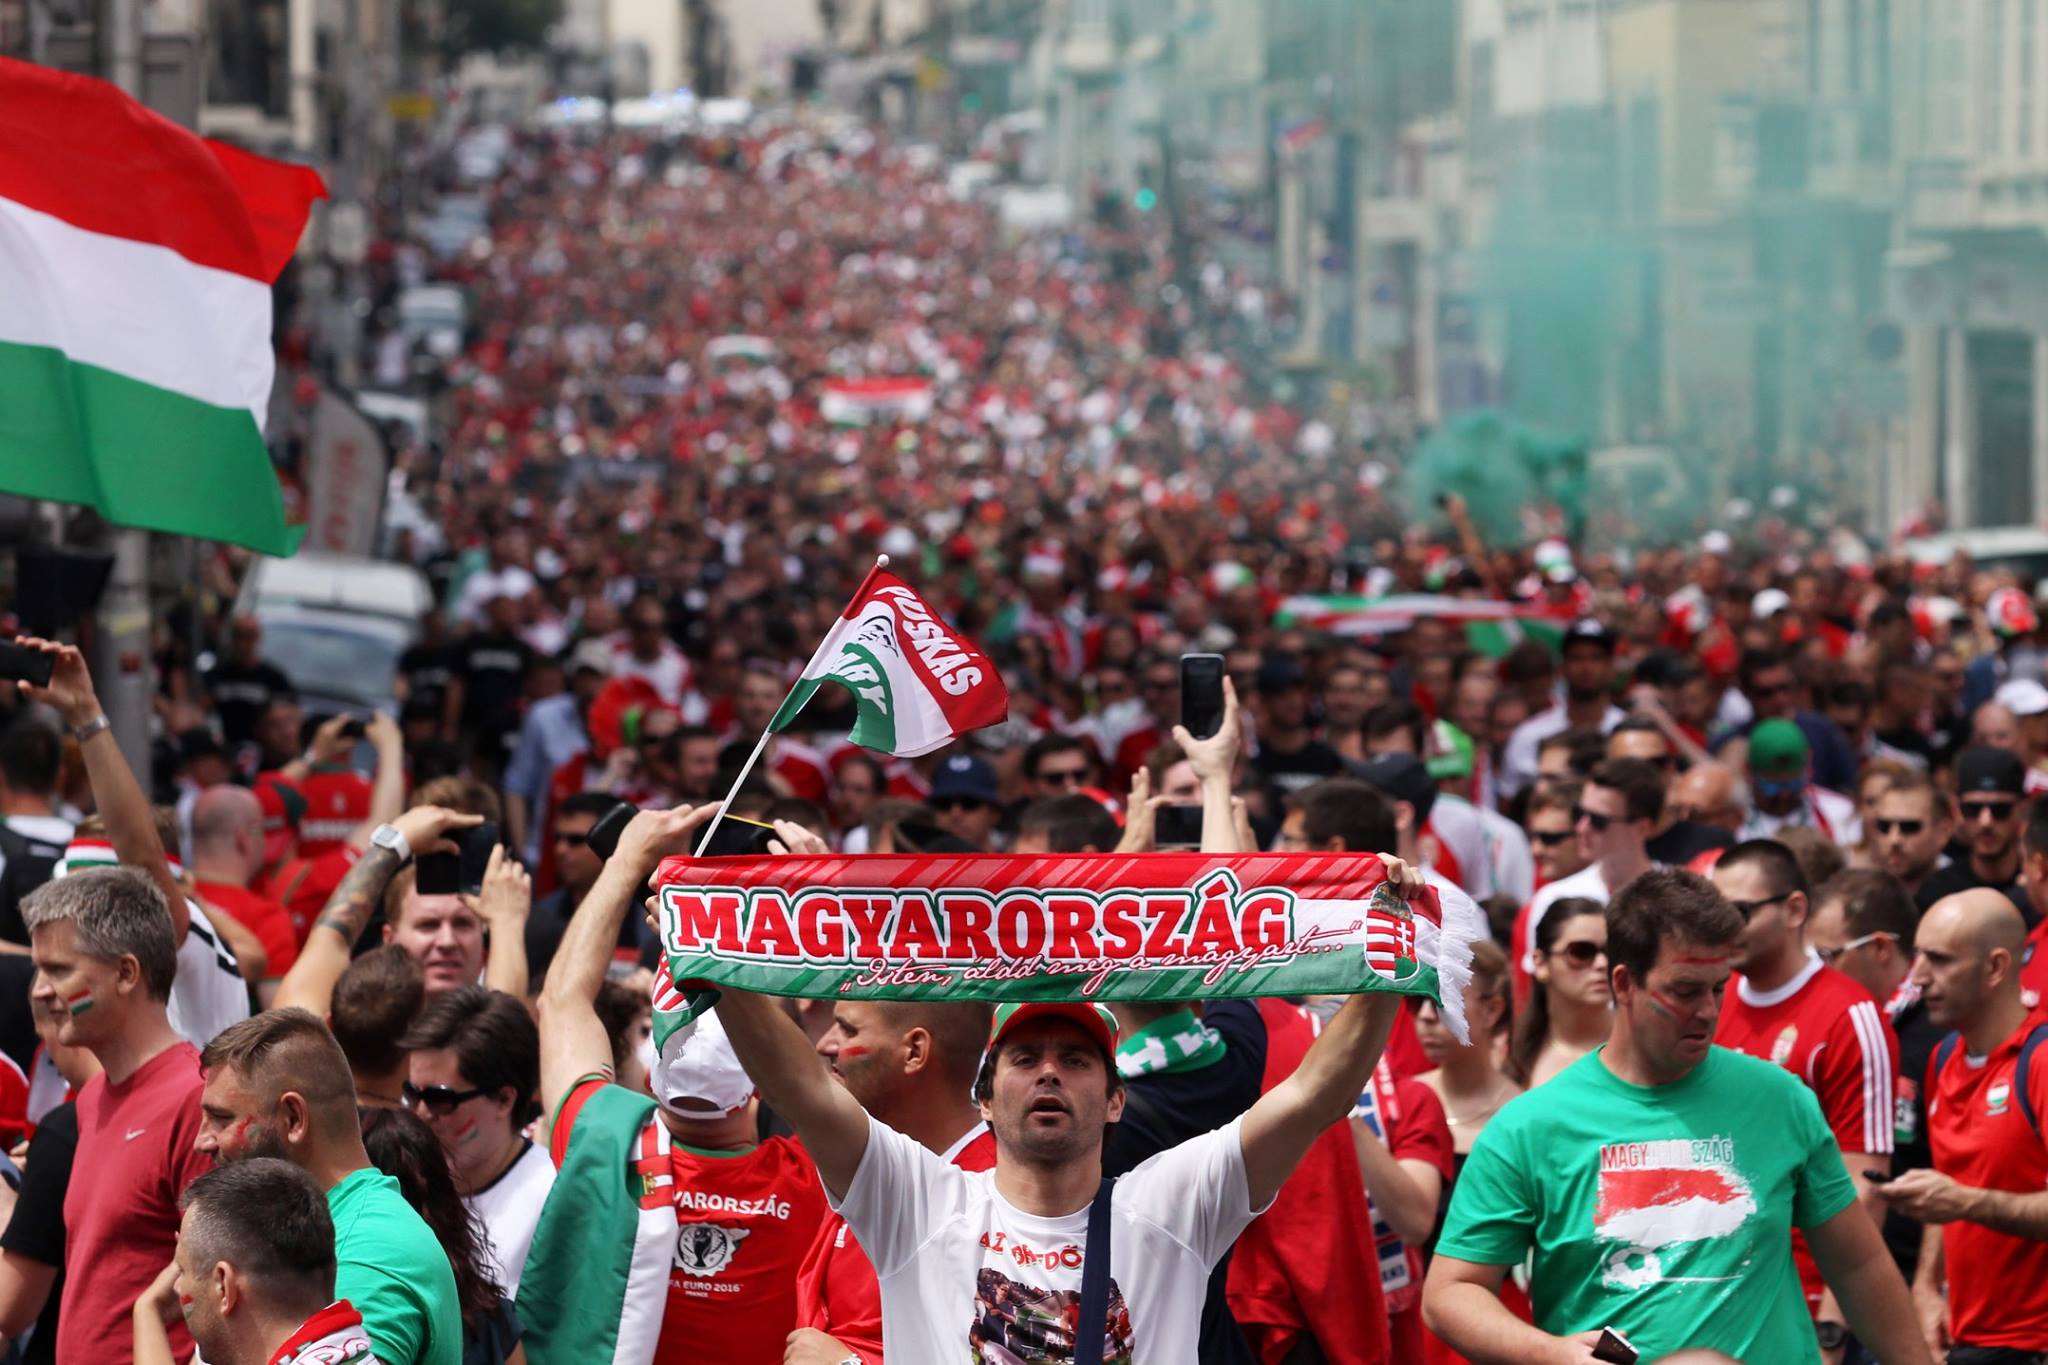 हंगरी के फुटबॉल प्रशंसक